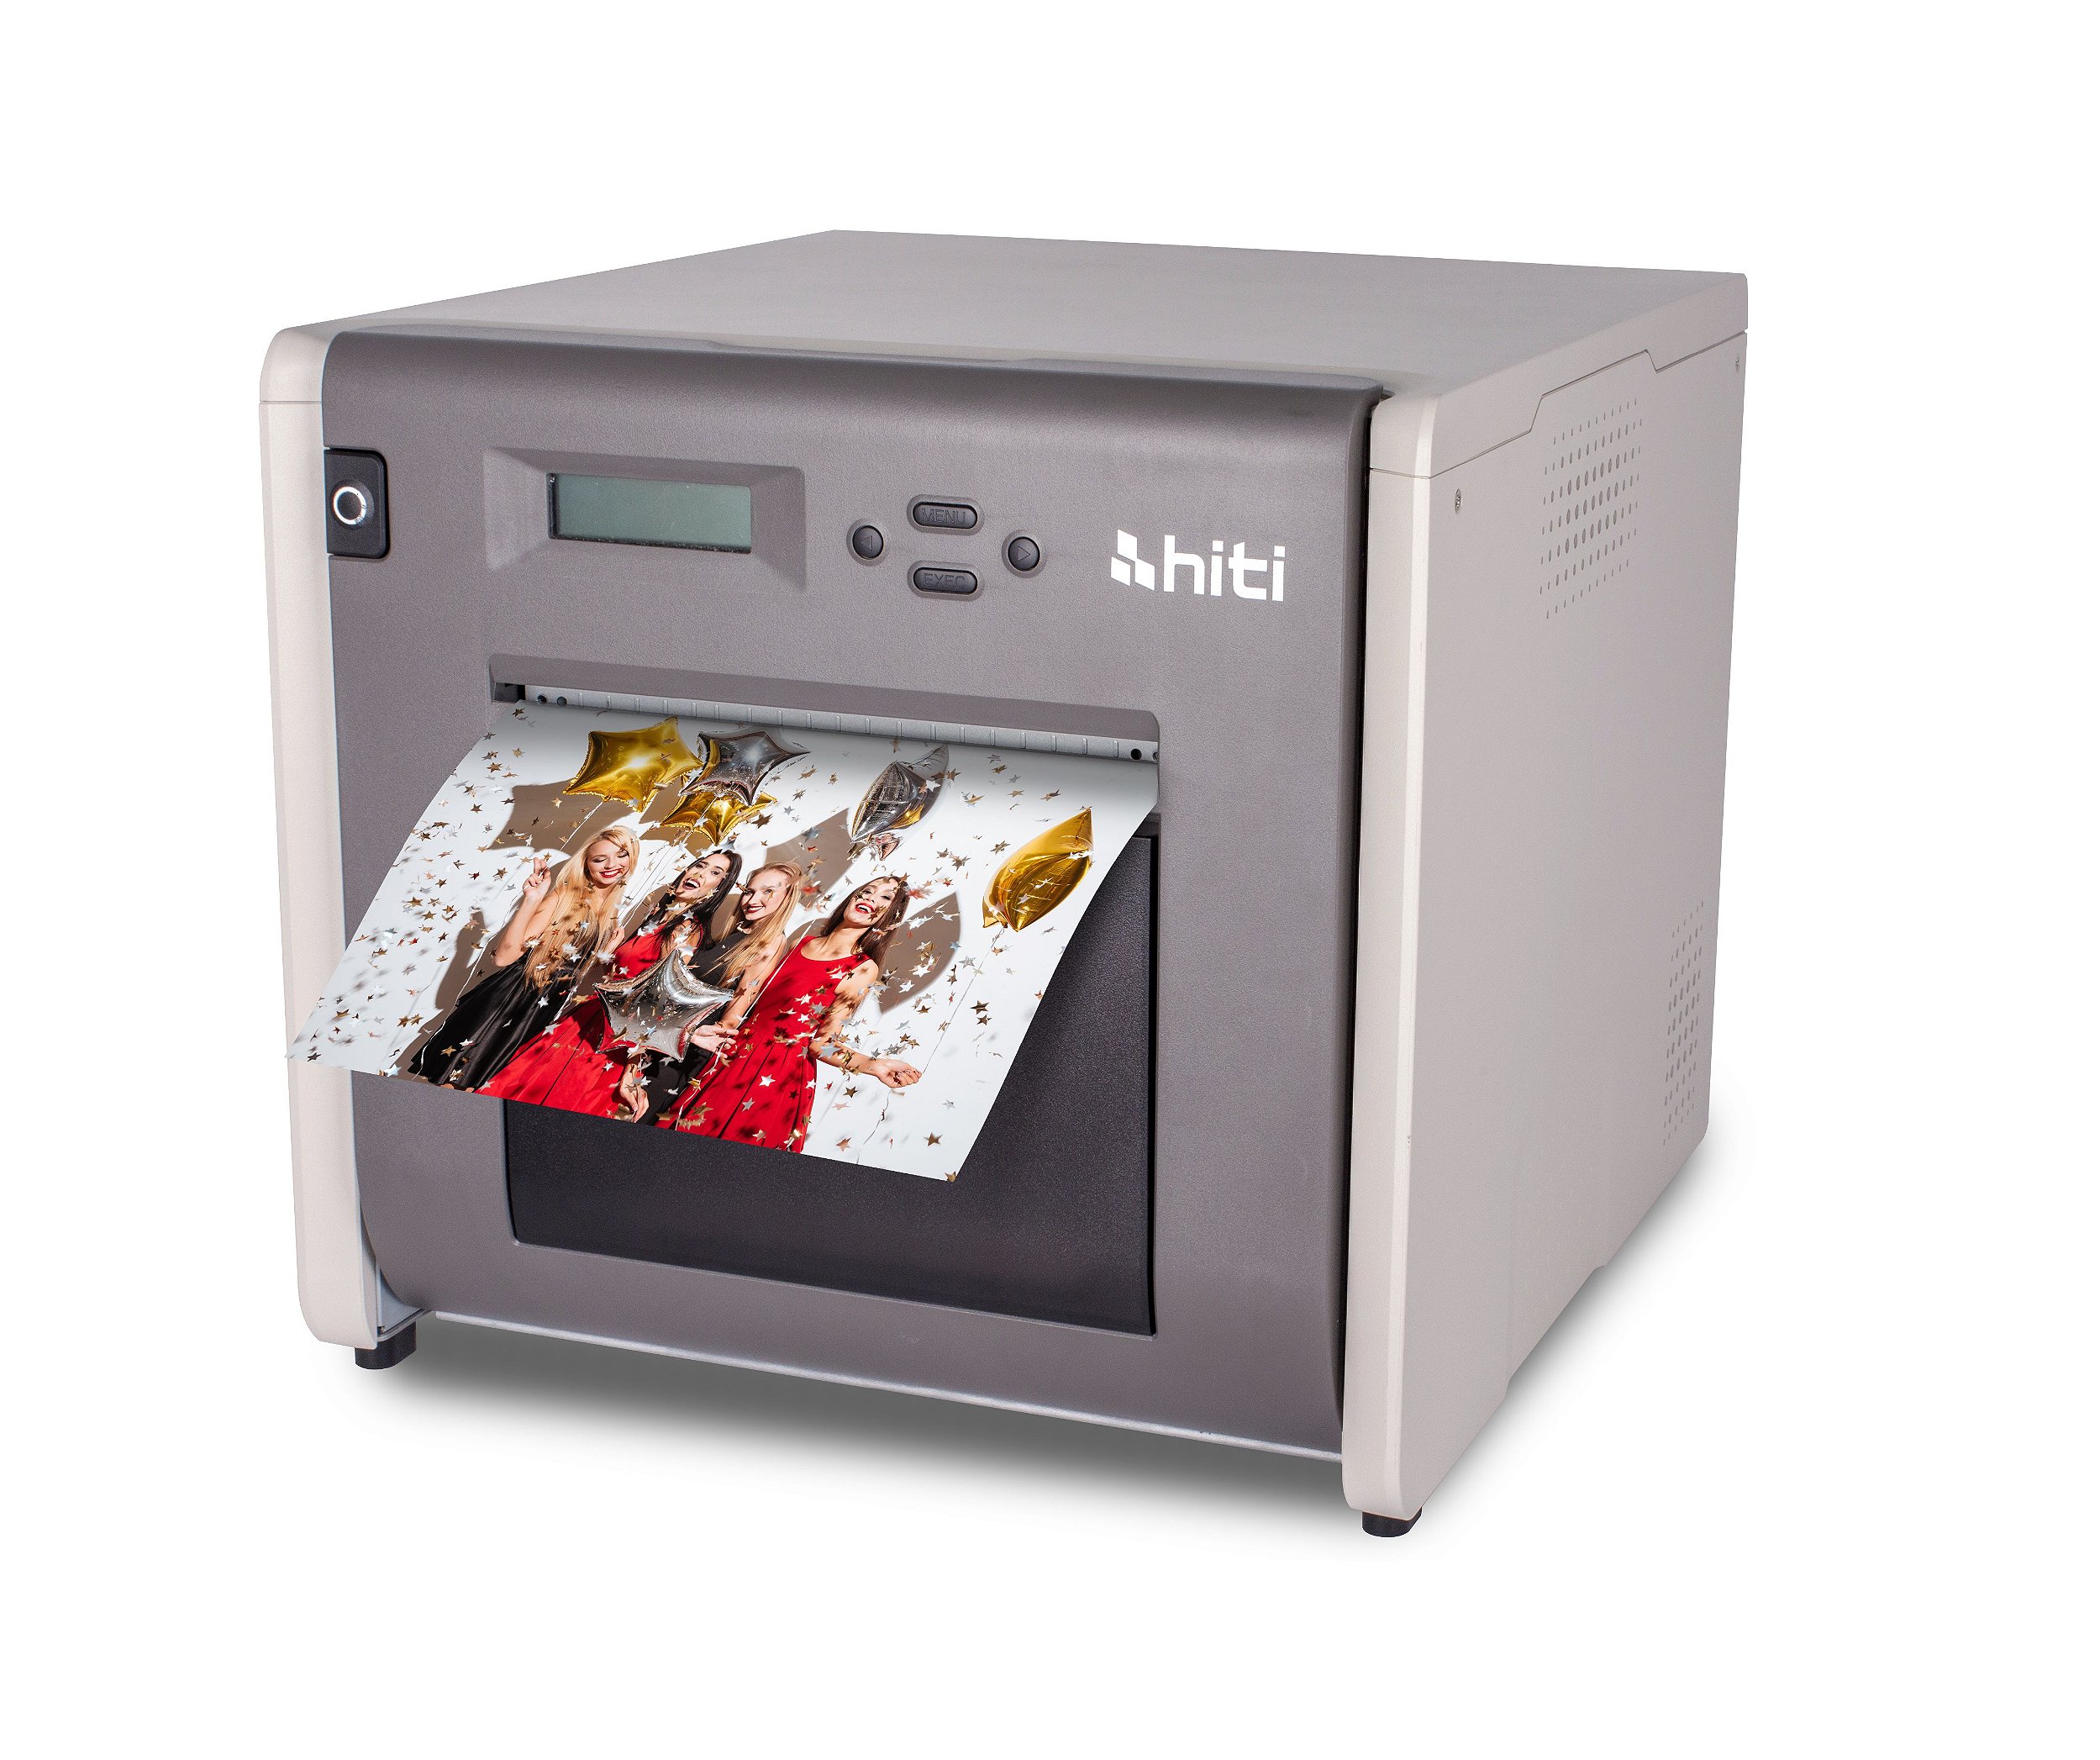 Impressora HiTi P525L - Guaraci Digital Distribuidor Oficial HiTi e Citizen